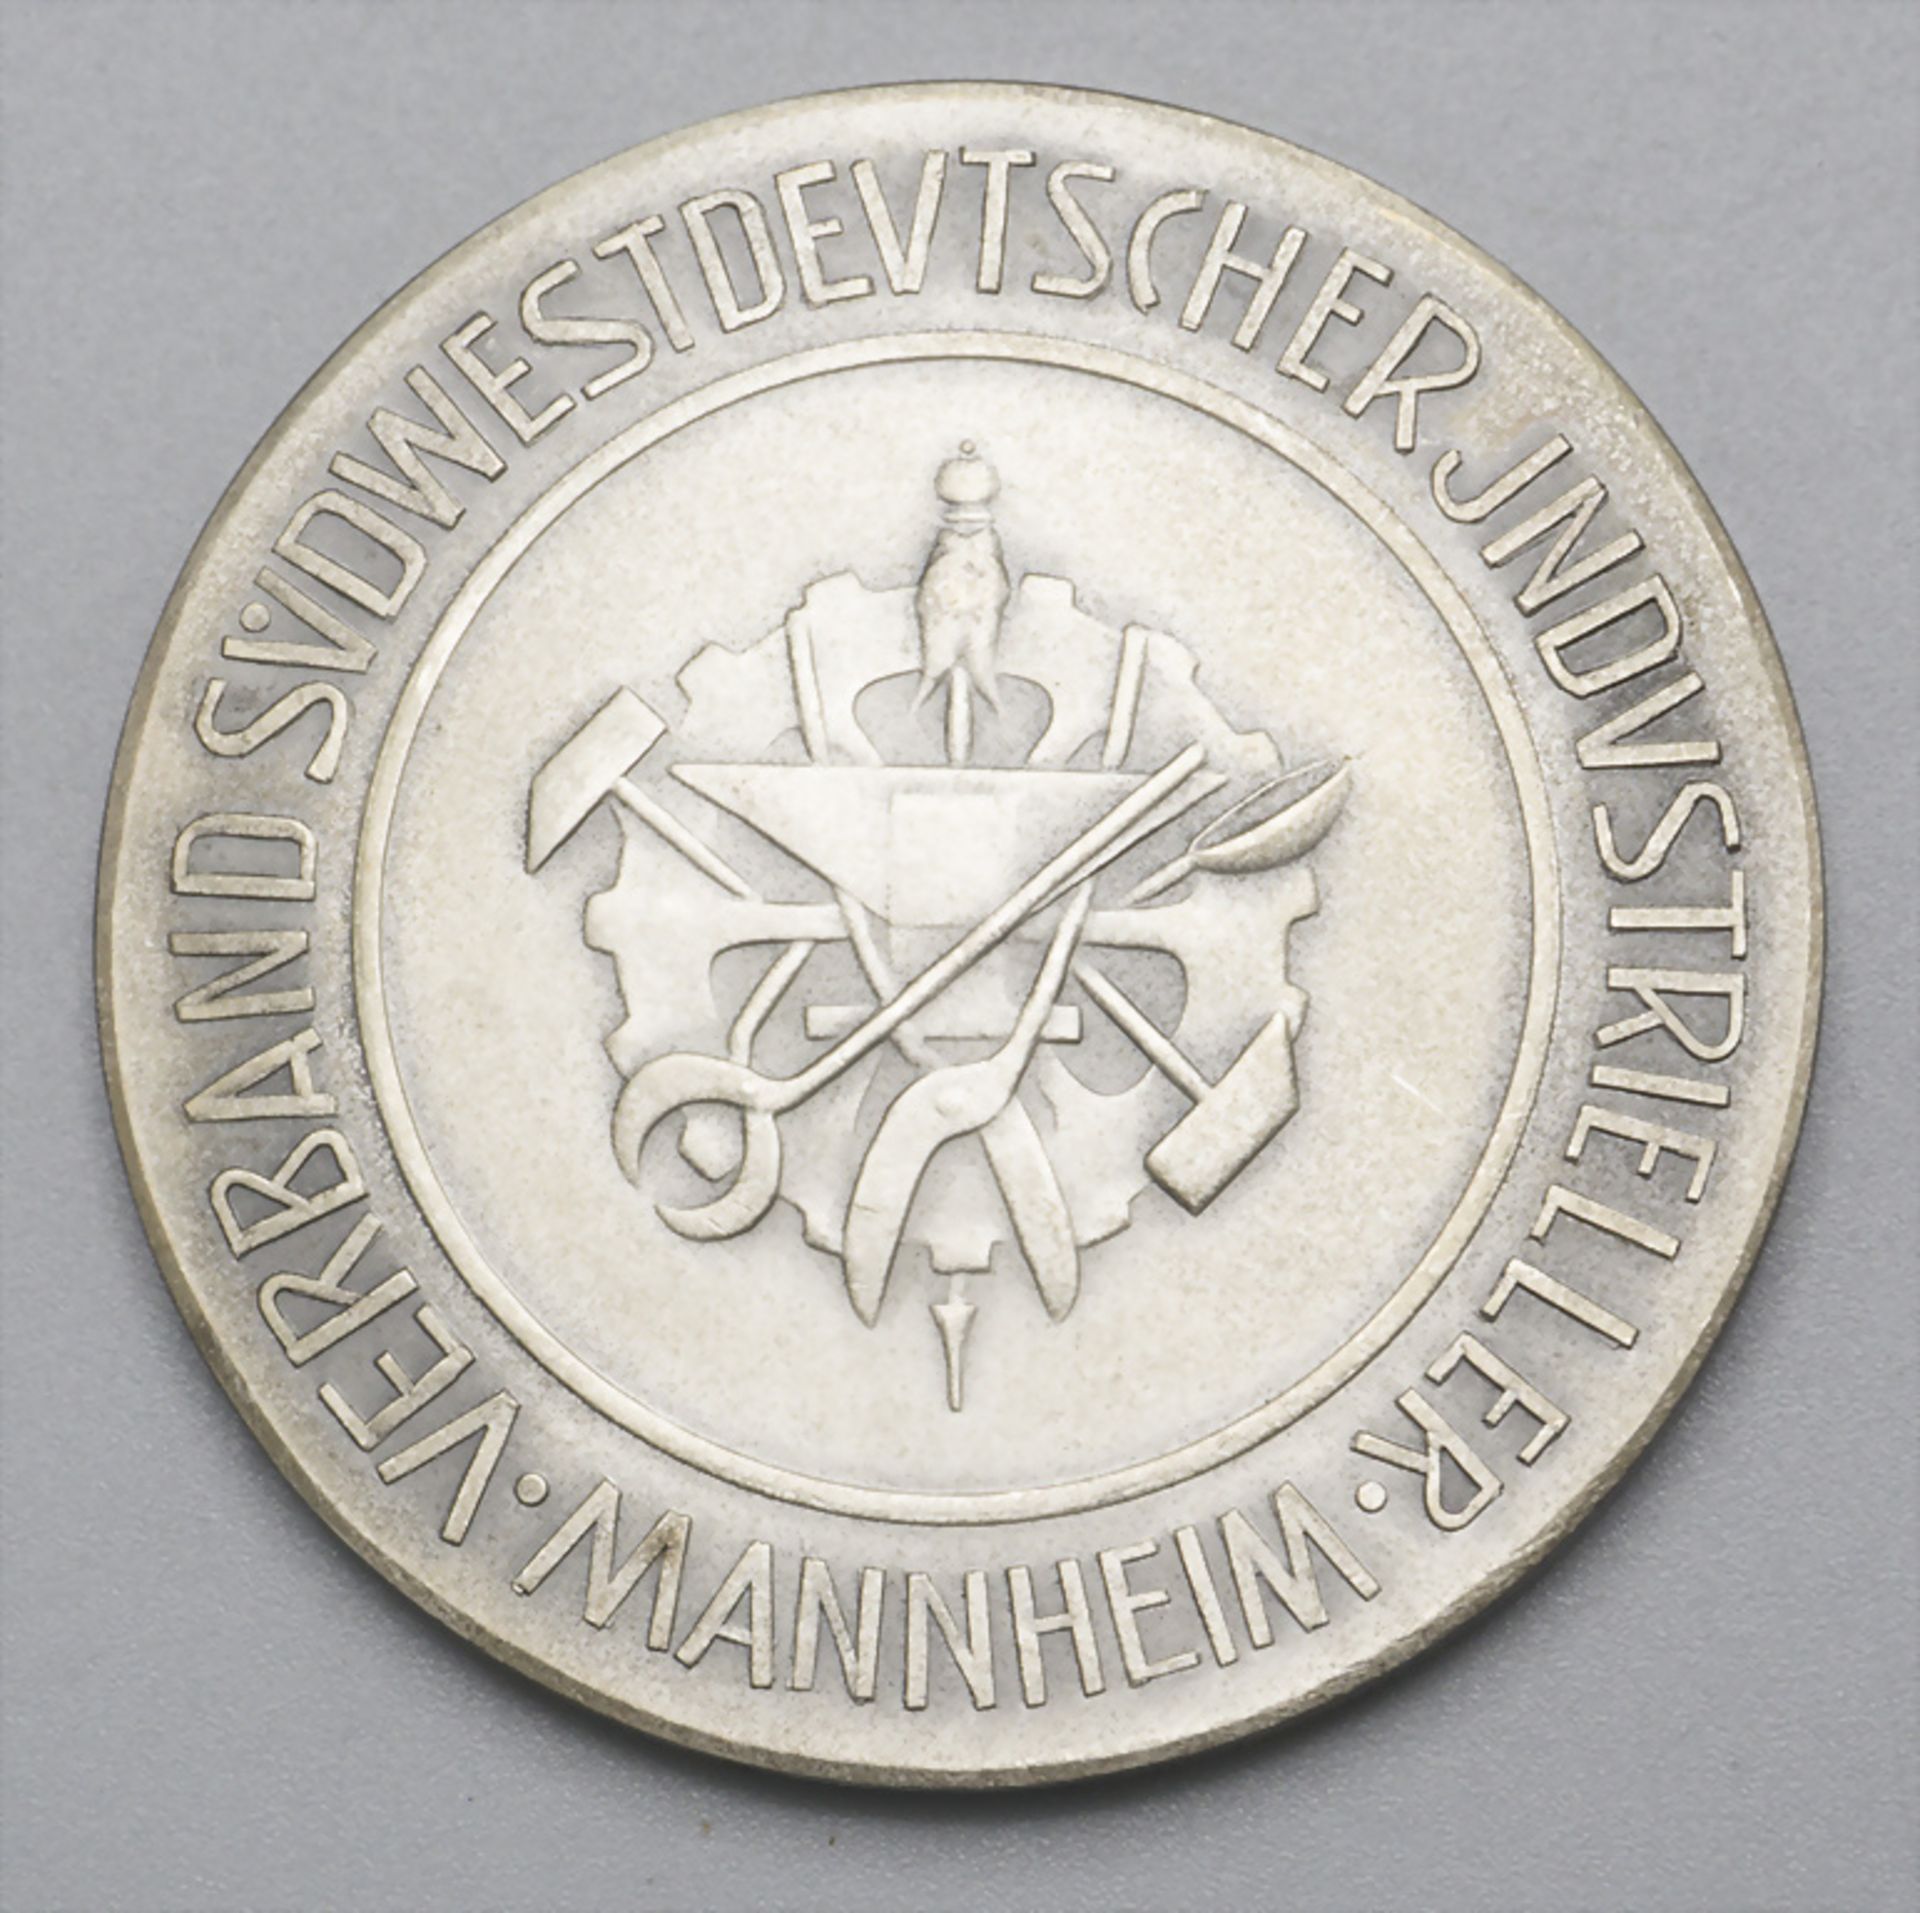 Medaille 'Verband Südwestdeutscher Industrieller in Mannheim', um 1920 - Image 2 of 2